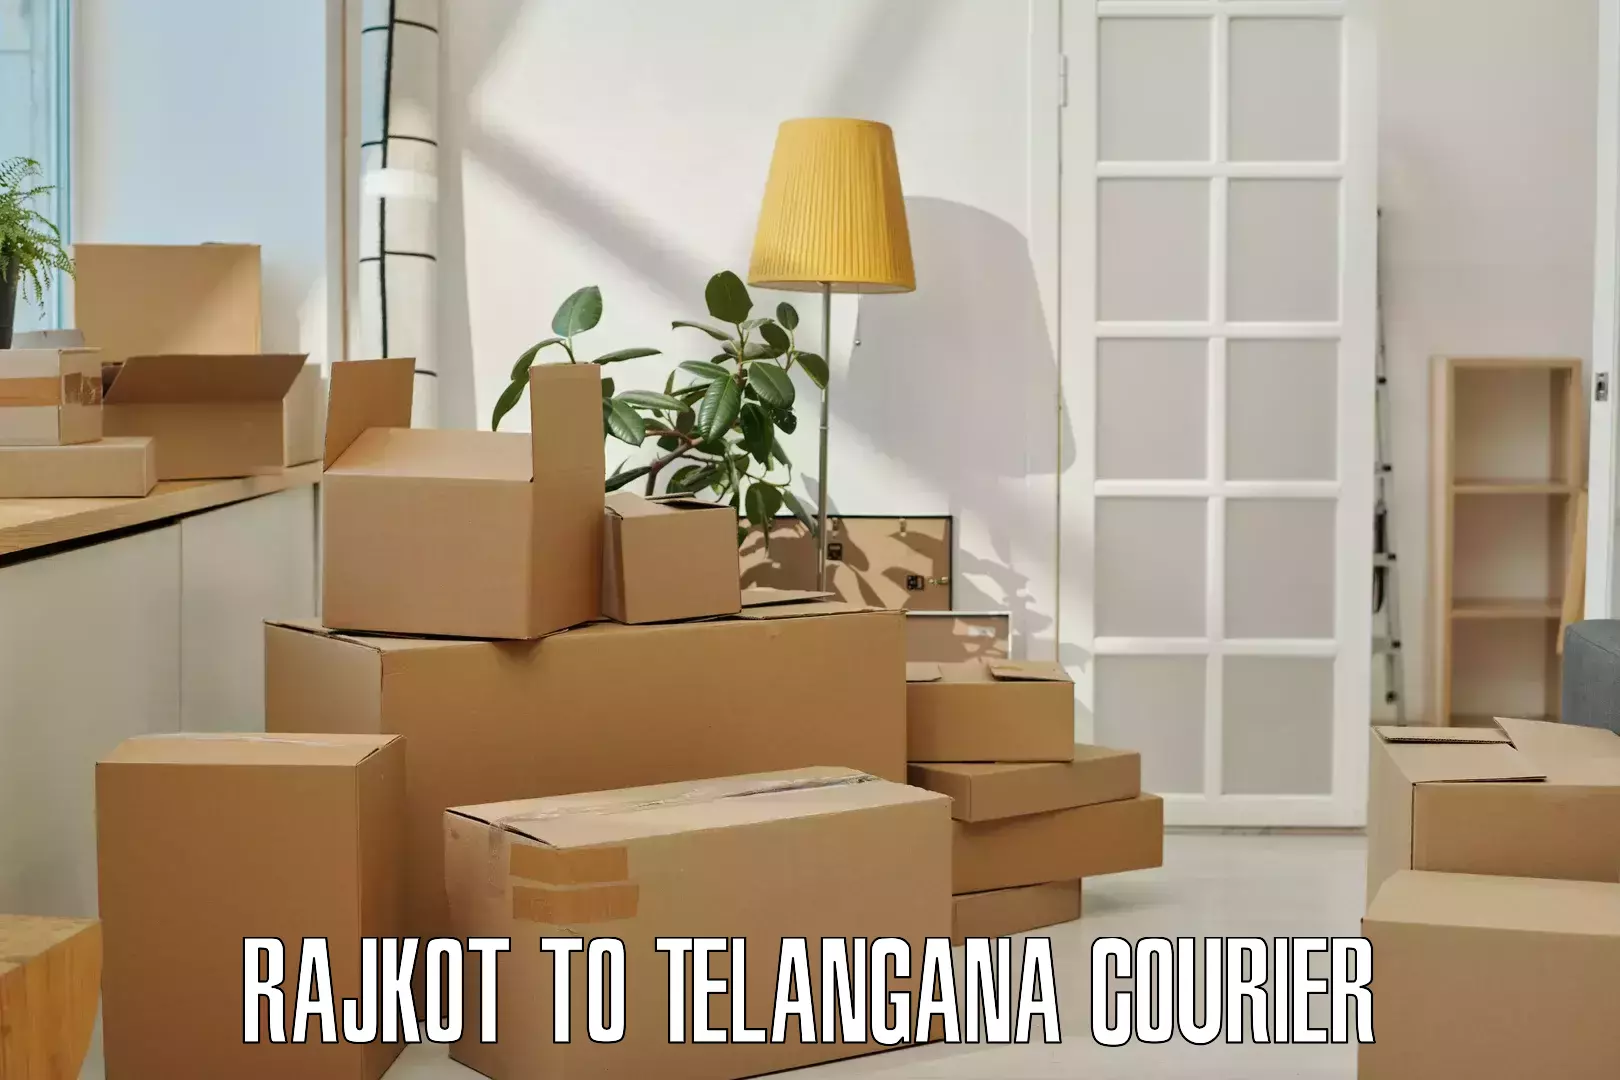 Door-to-door shipment Rajkot to Kothagudem